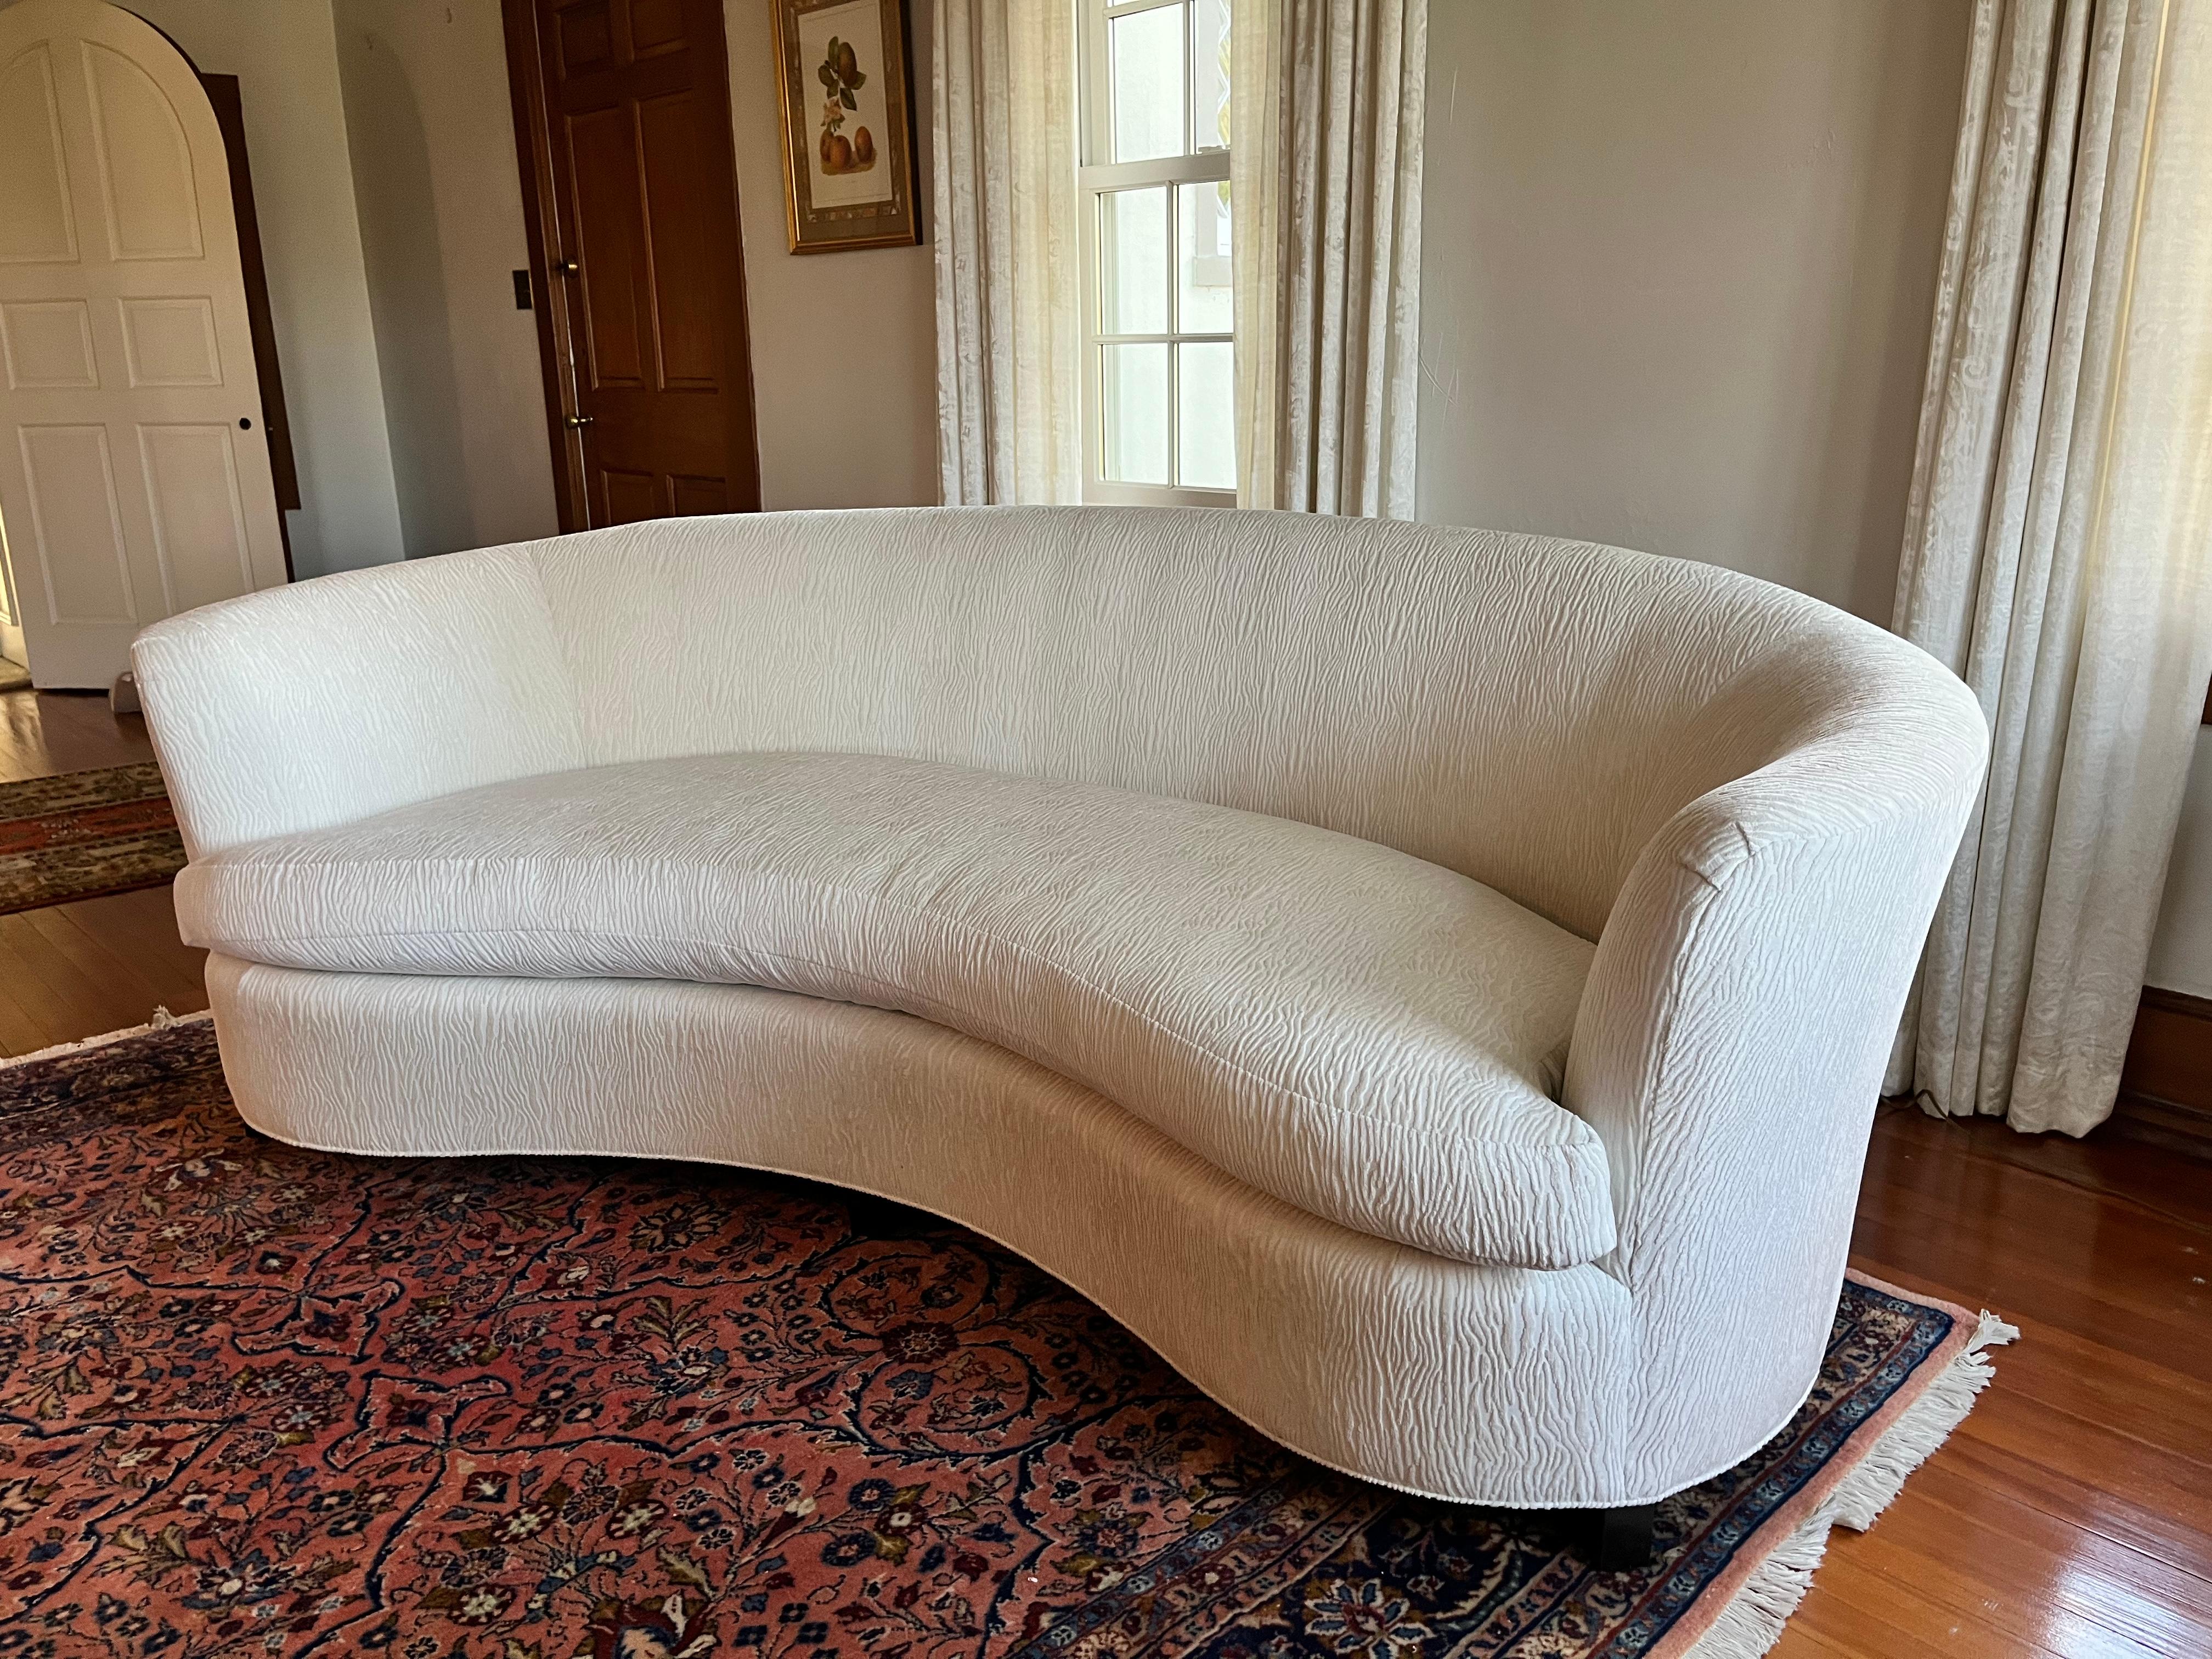 Das Opera Sofa hat ein symmetrisches Design und einen Sinn für schlichte Raffinesse, wie die traditionelle Opernhaus-Galeriebestuhlung. Sie hat eine feste Rückenlehne und ein lockeres, bequemes Sitzkissen.  Kürzlich neu gepolstert in einem P.